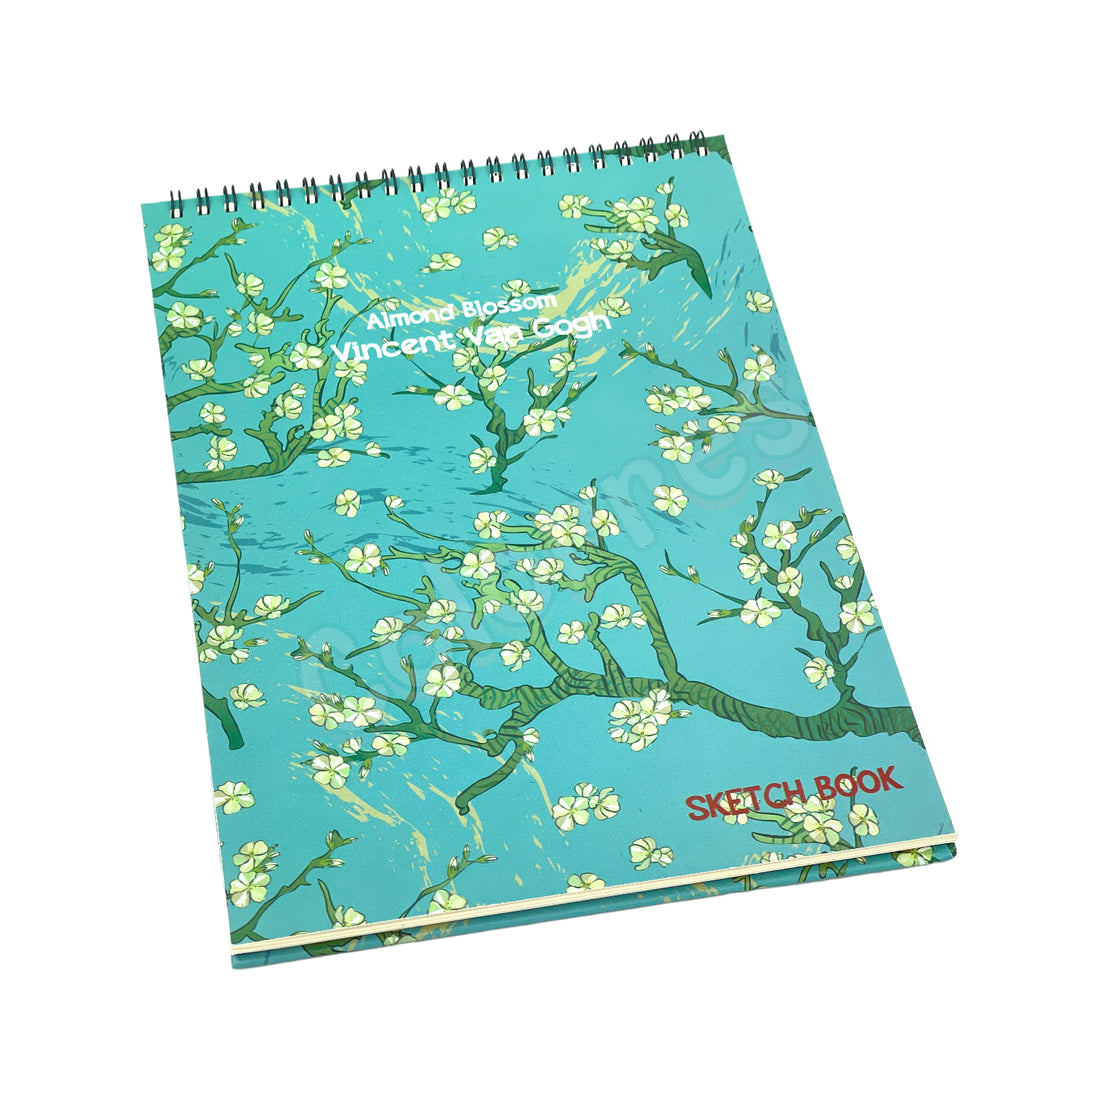 Van Gogh Almond Blossom Sketch Book